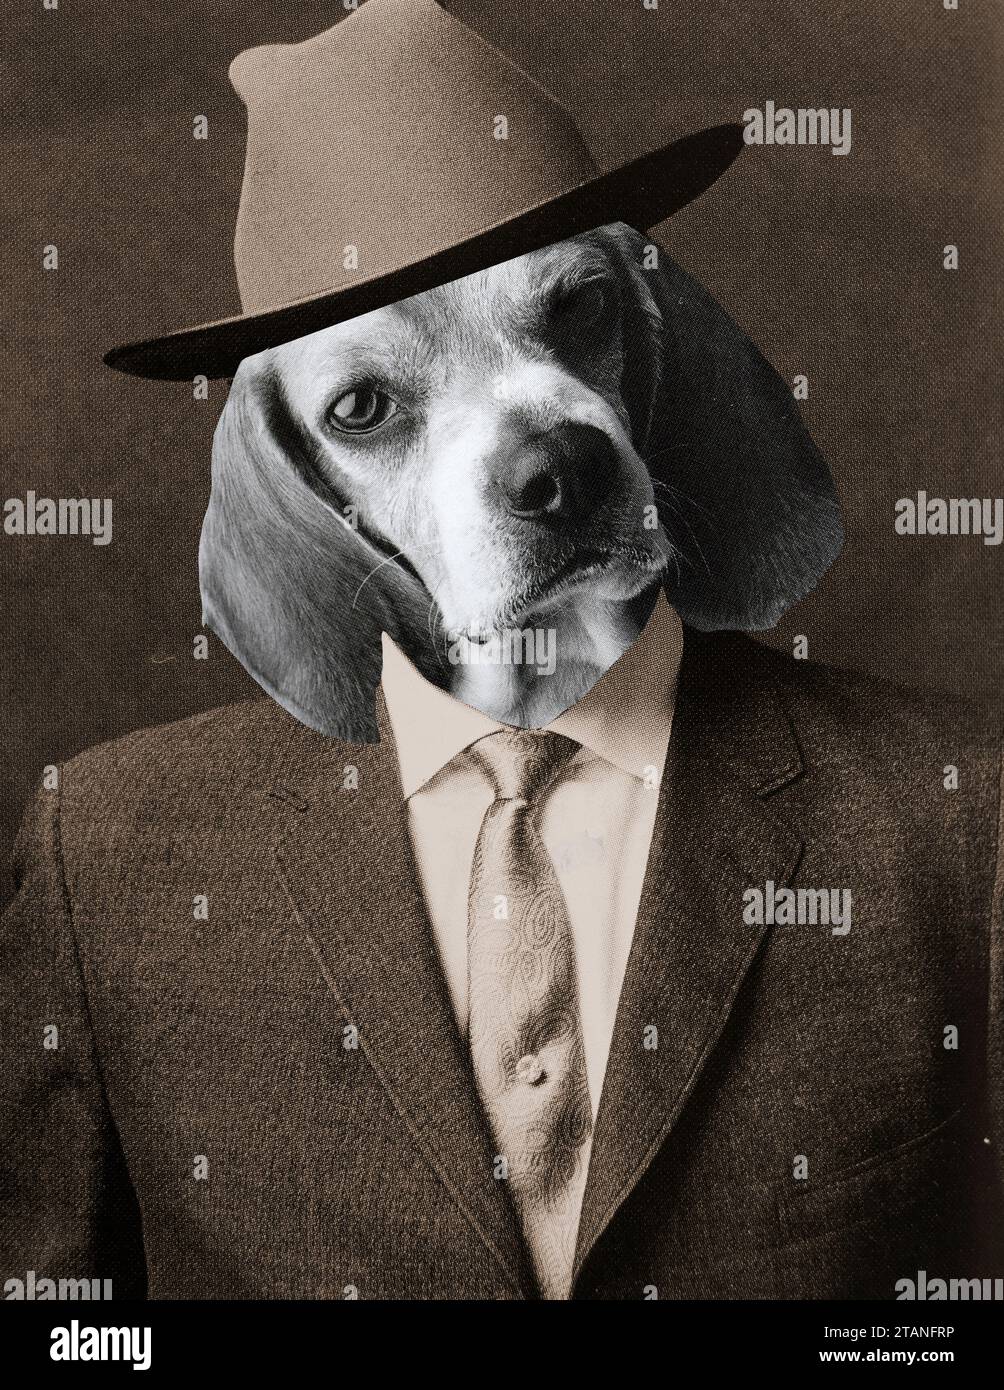 Porträt eines Hundes mit Anzug, Krawatte und Hut. Stockfoto